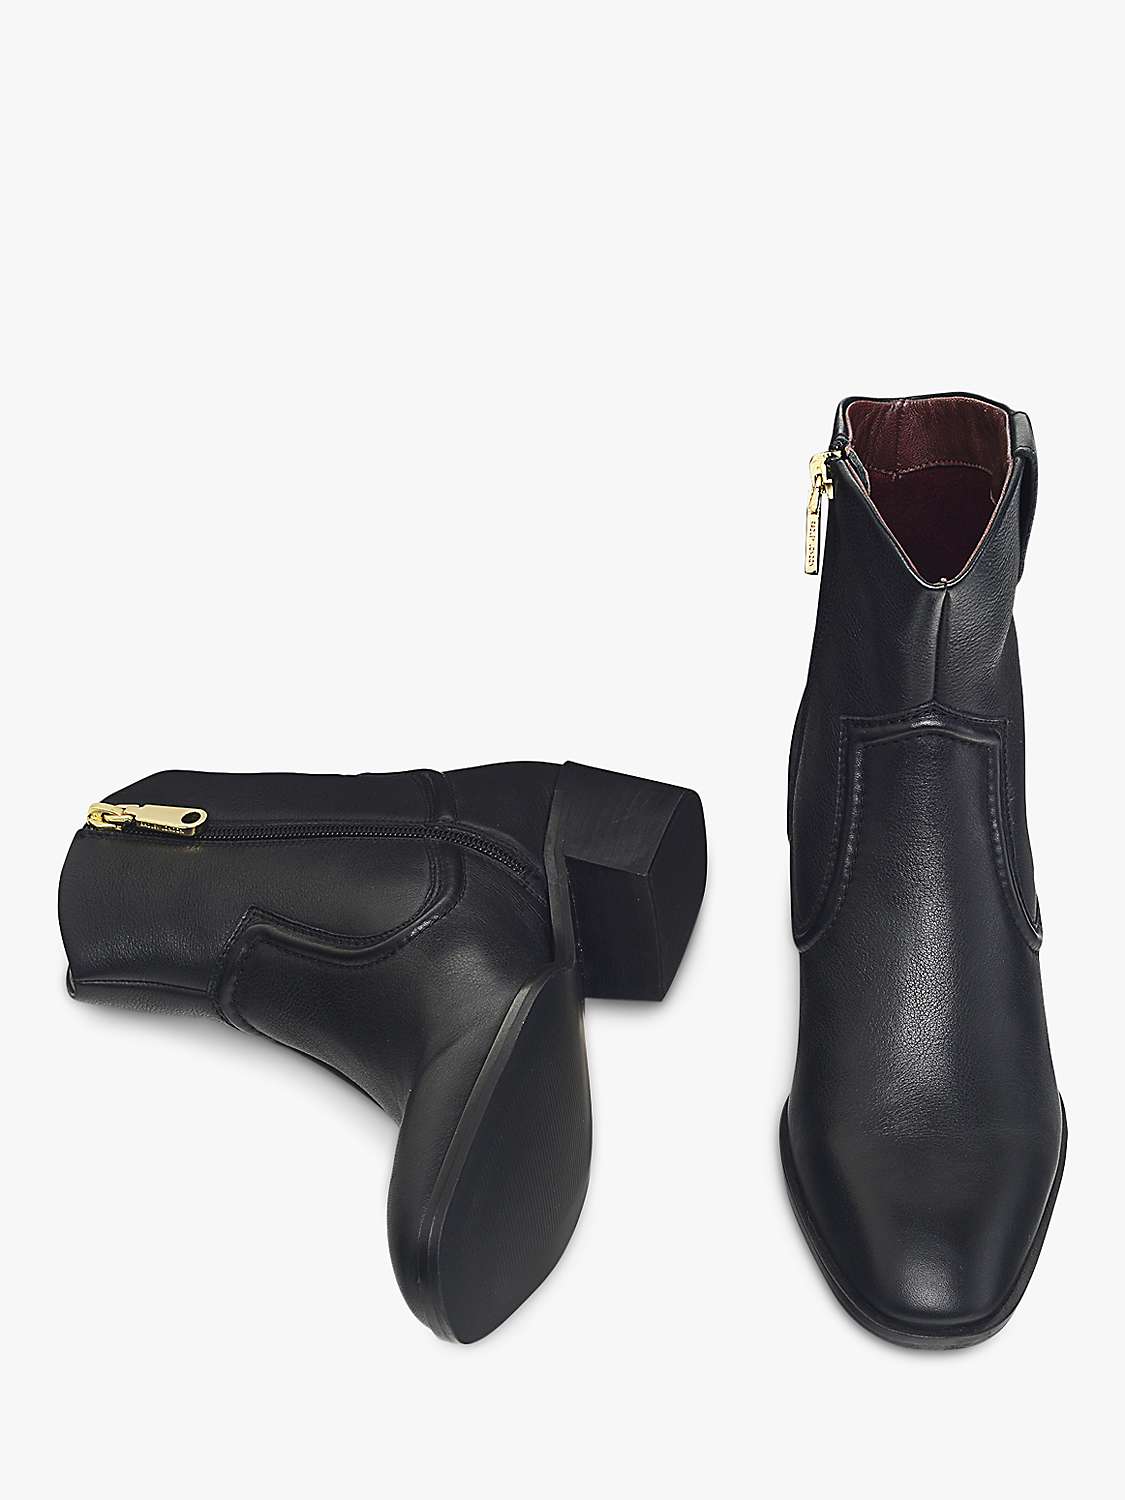 Buy Radley Farrier Walk Westen Ankle Boots, Black Online at johnlewis.com